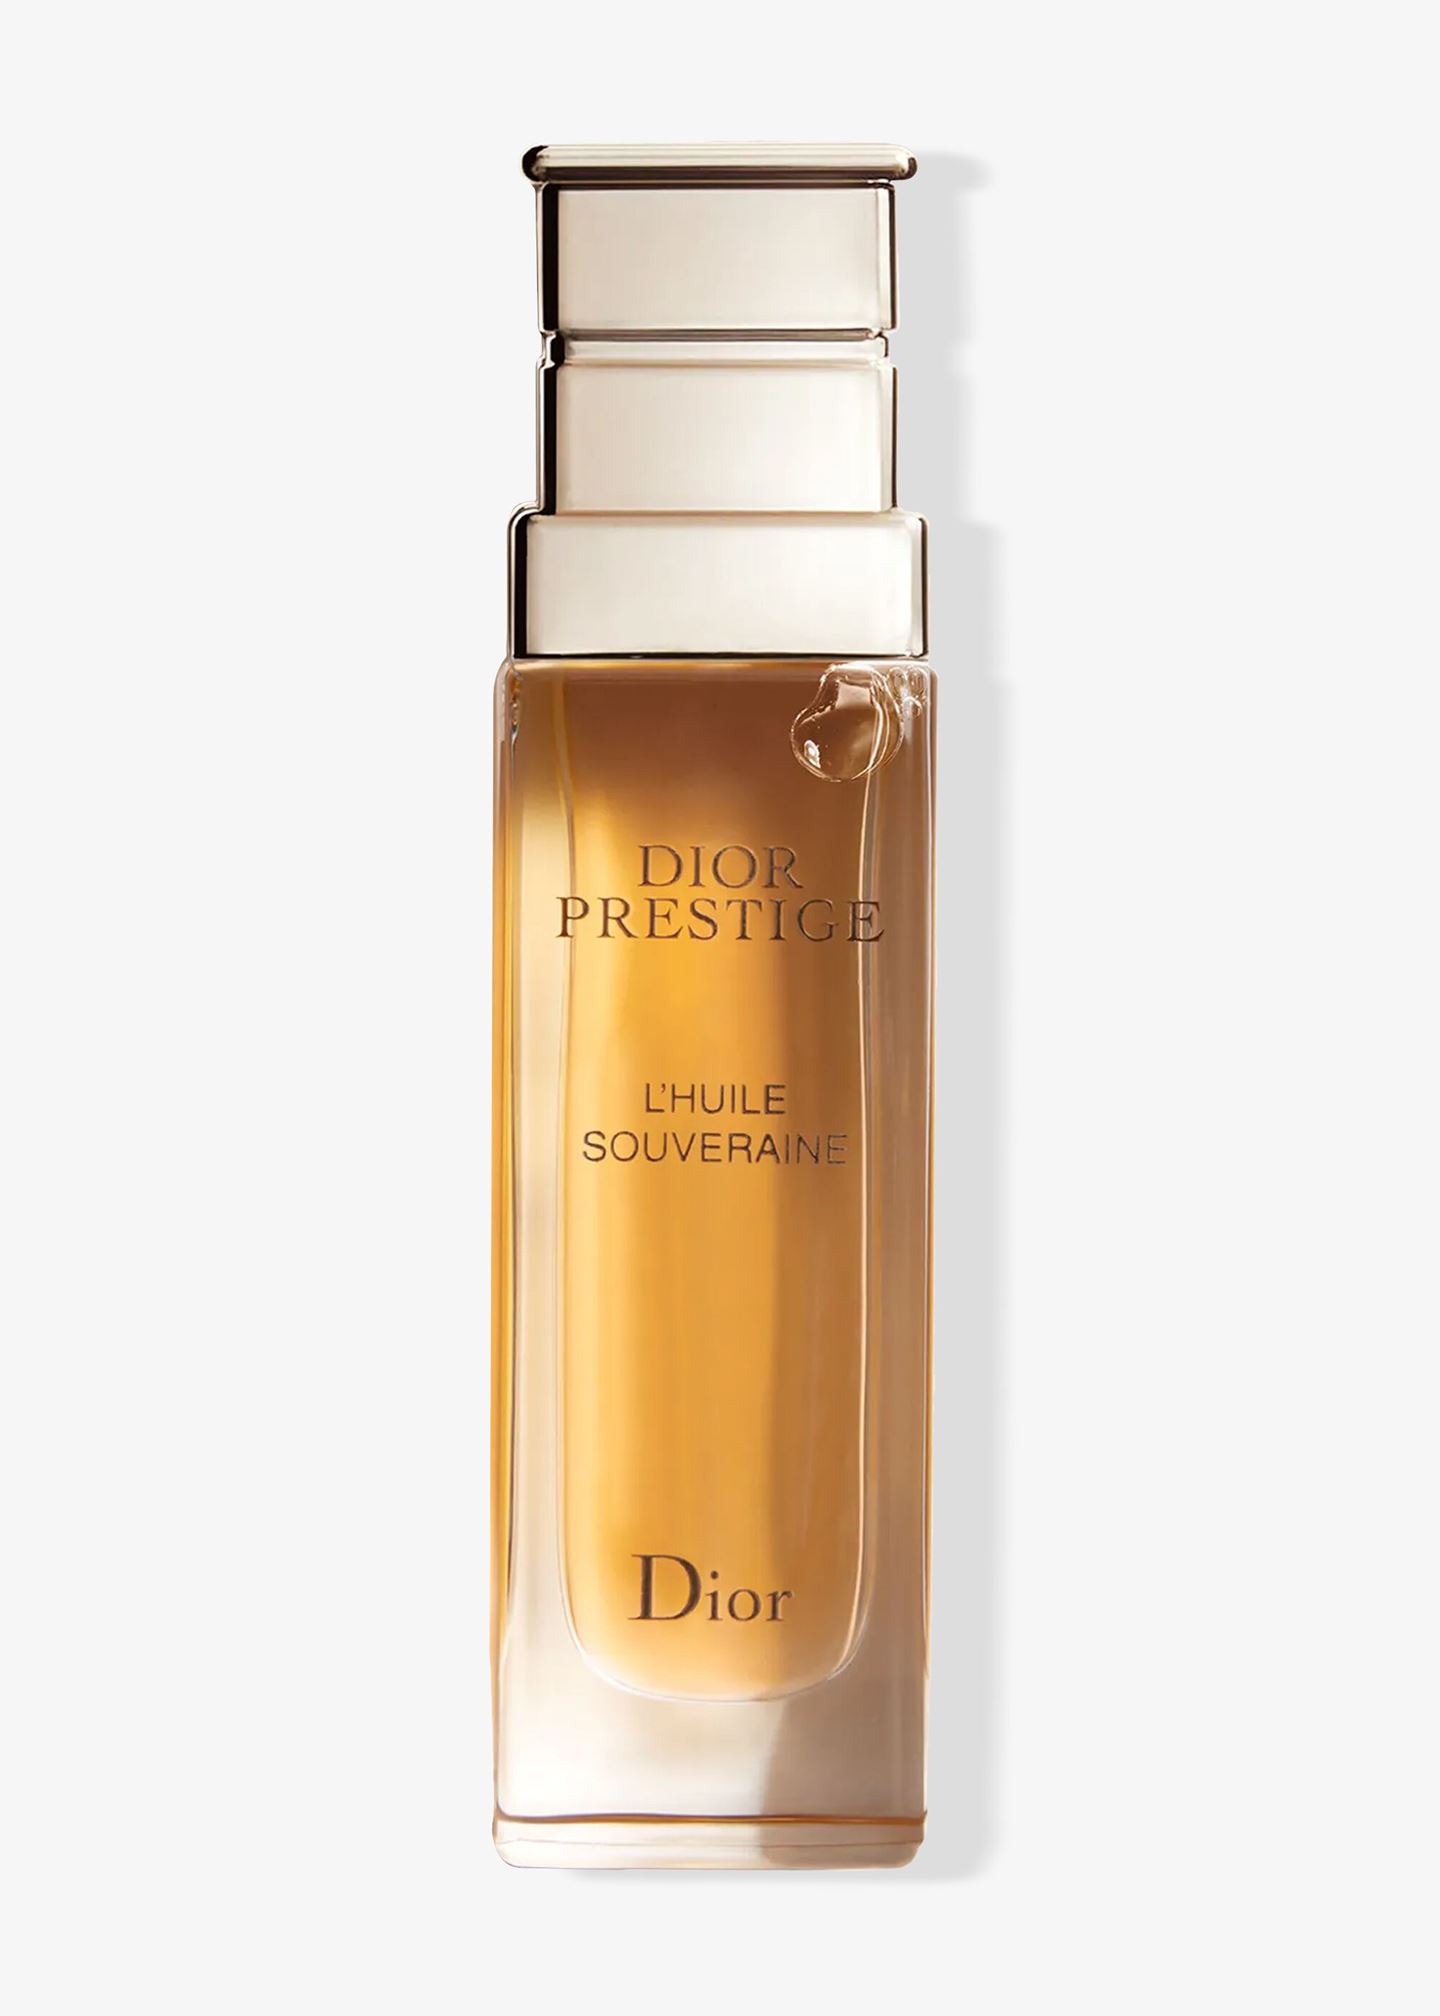 Gesichtsöl «Dior Prestige L'huile souveraine»